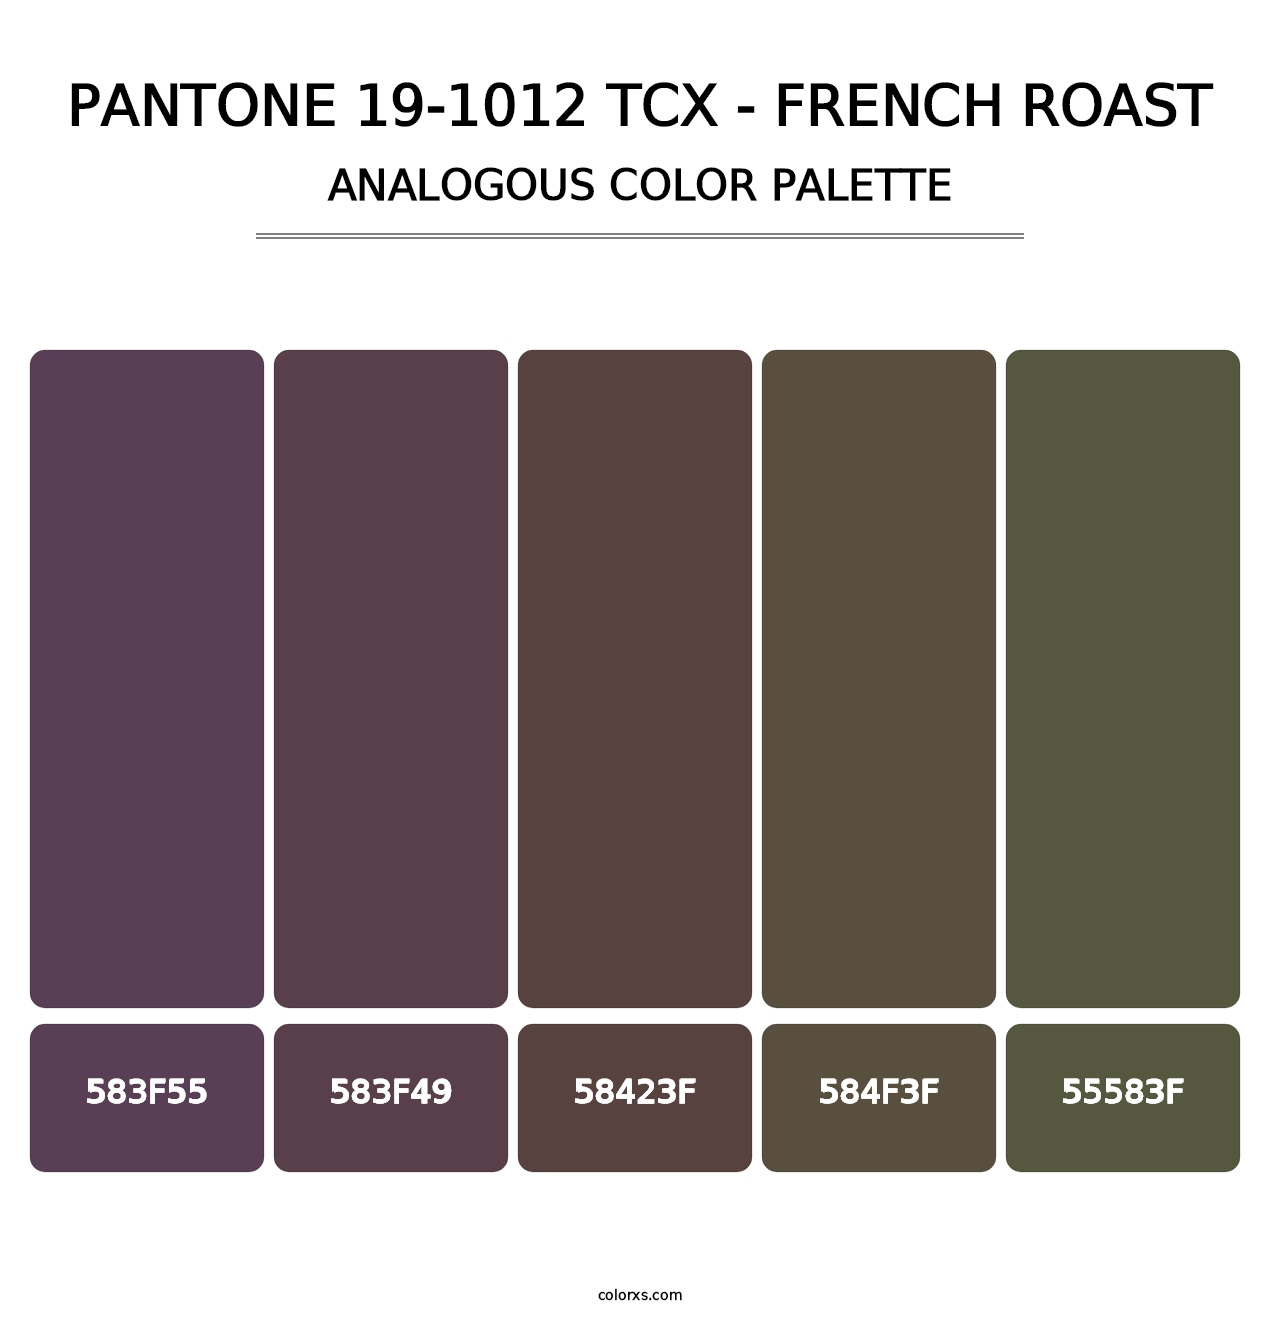 PANTONE 19-1012 TCX - French Roast - Analogous Color Palette